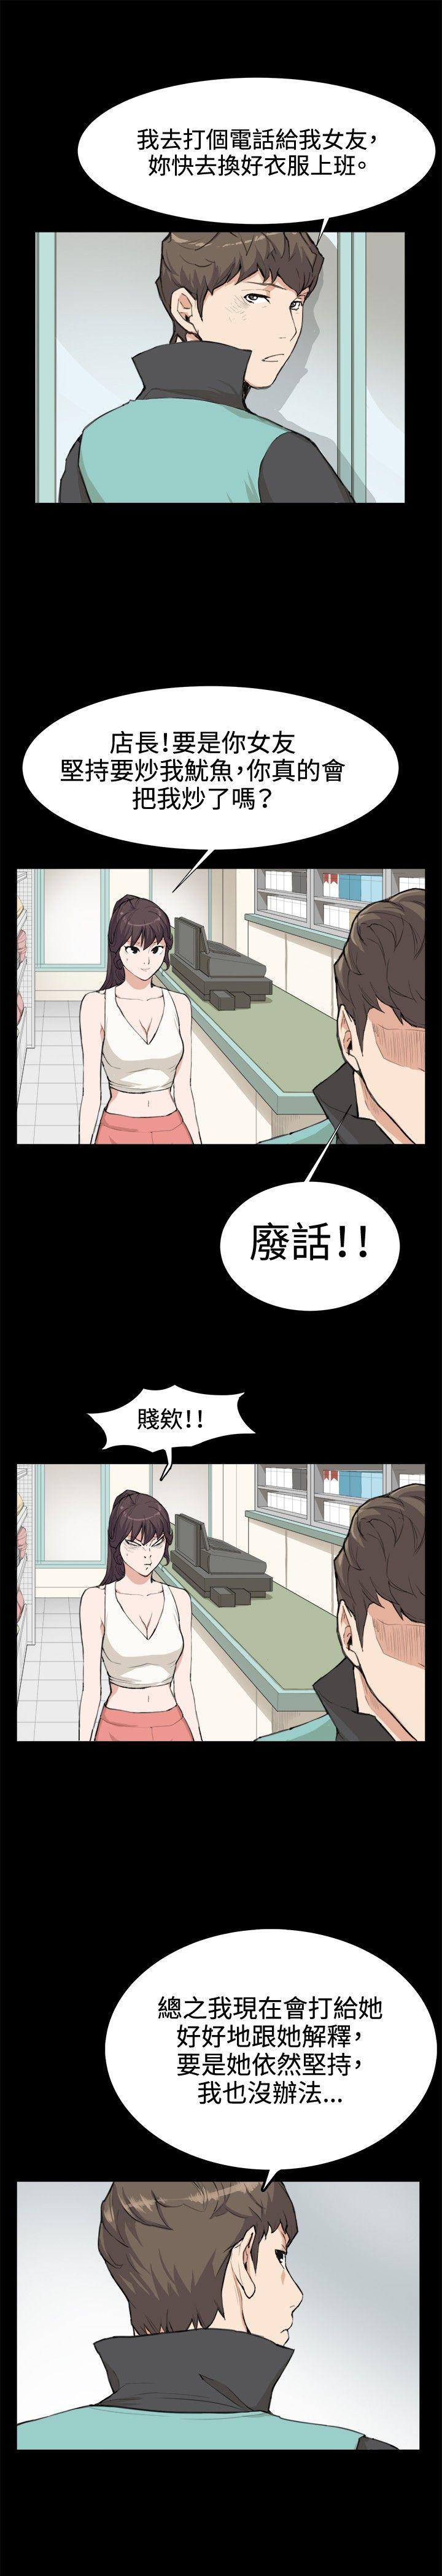 韩国污漫画 深夜便利店 第7话 9